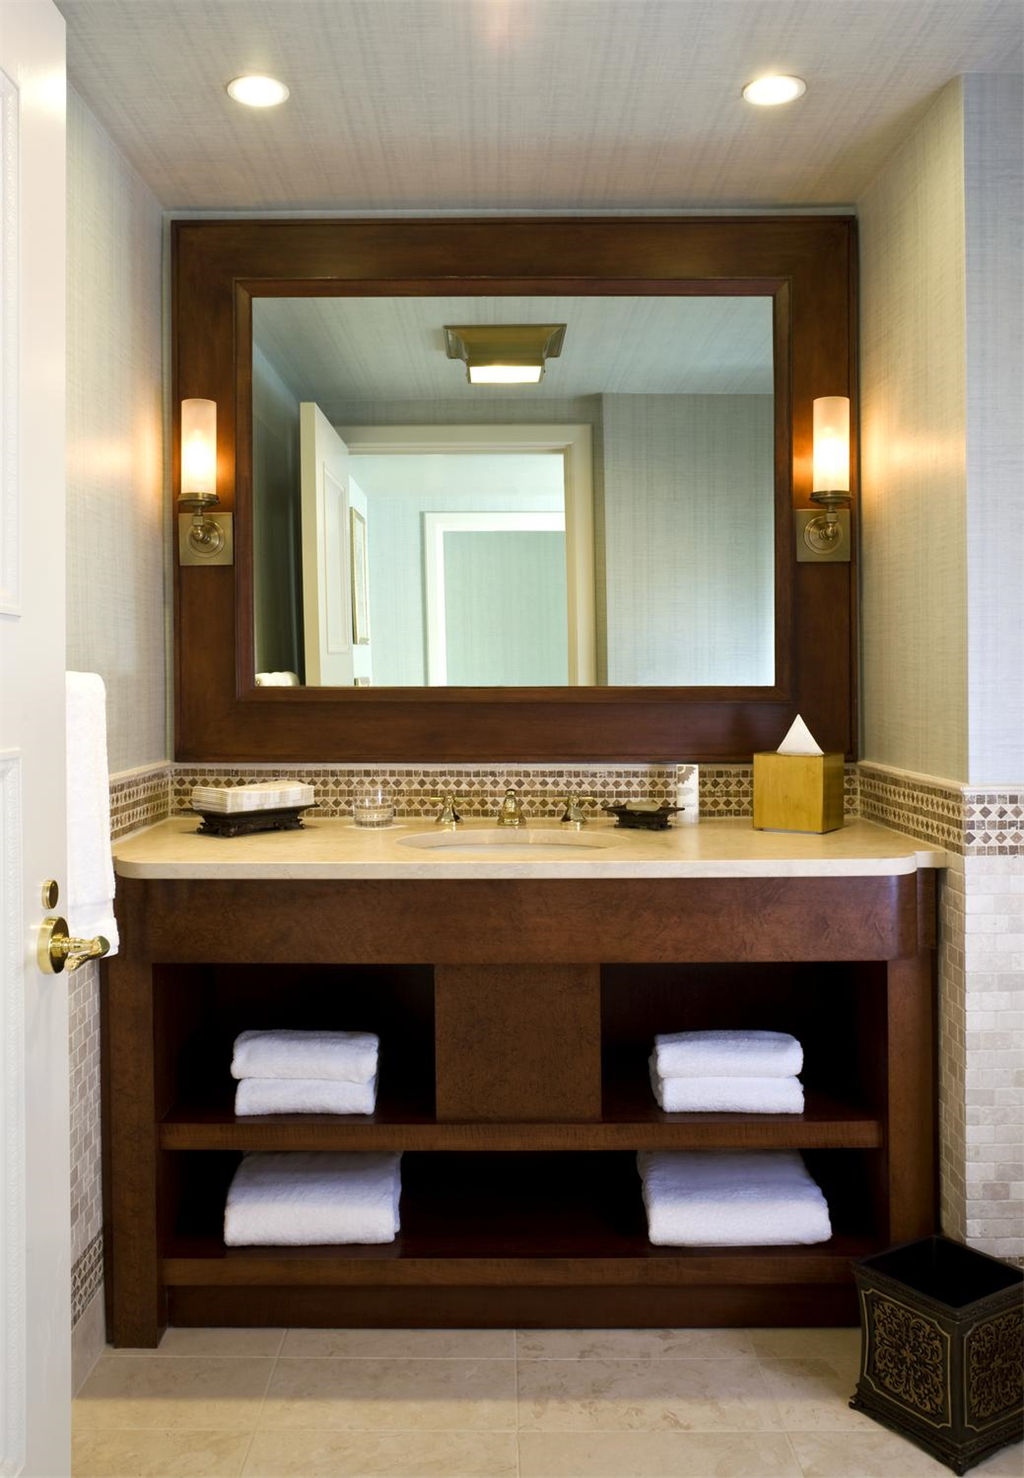 5)The St. Regis Washington, D.C.Suite Bathroom Ĕz.jpg